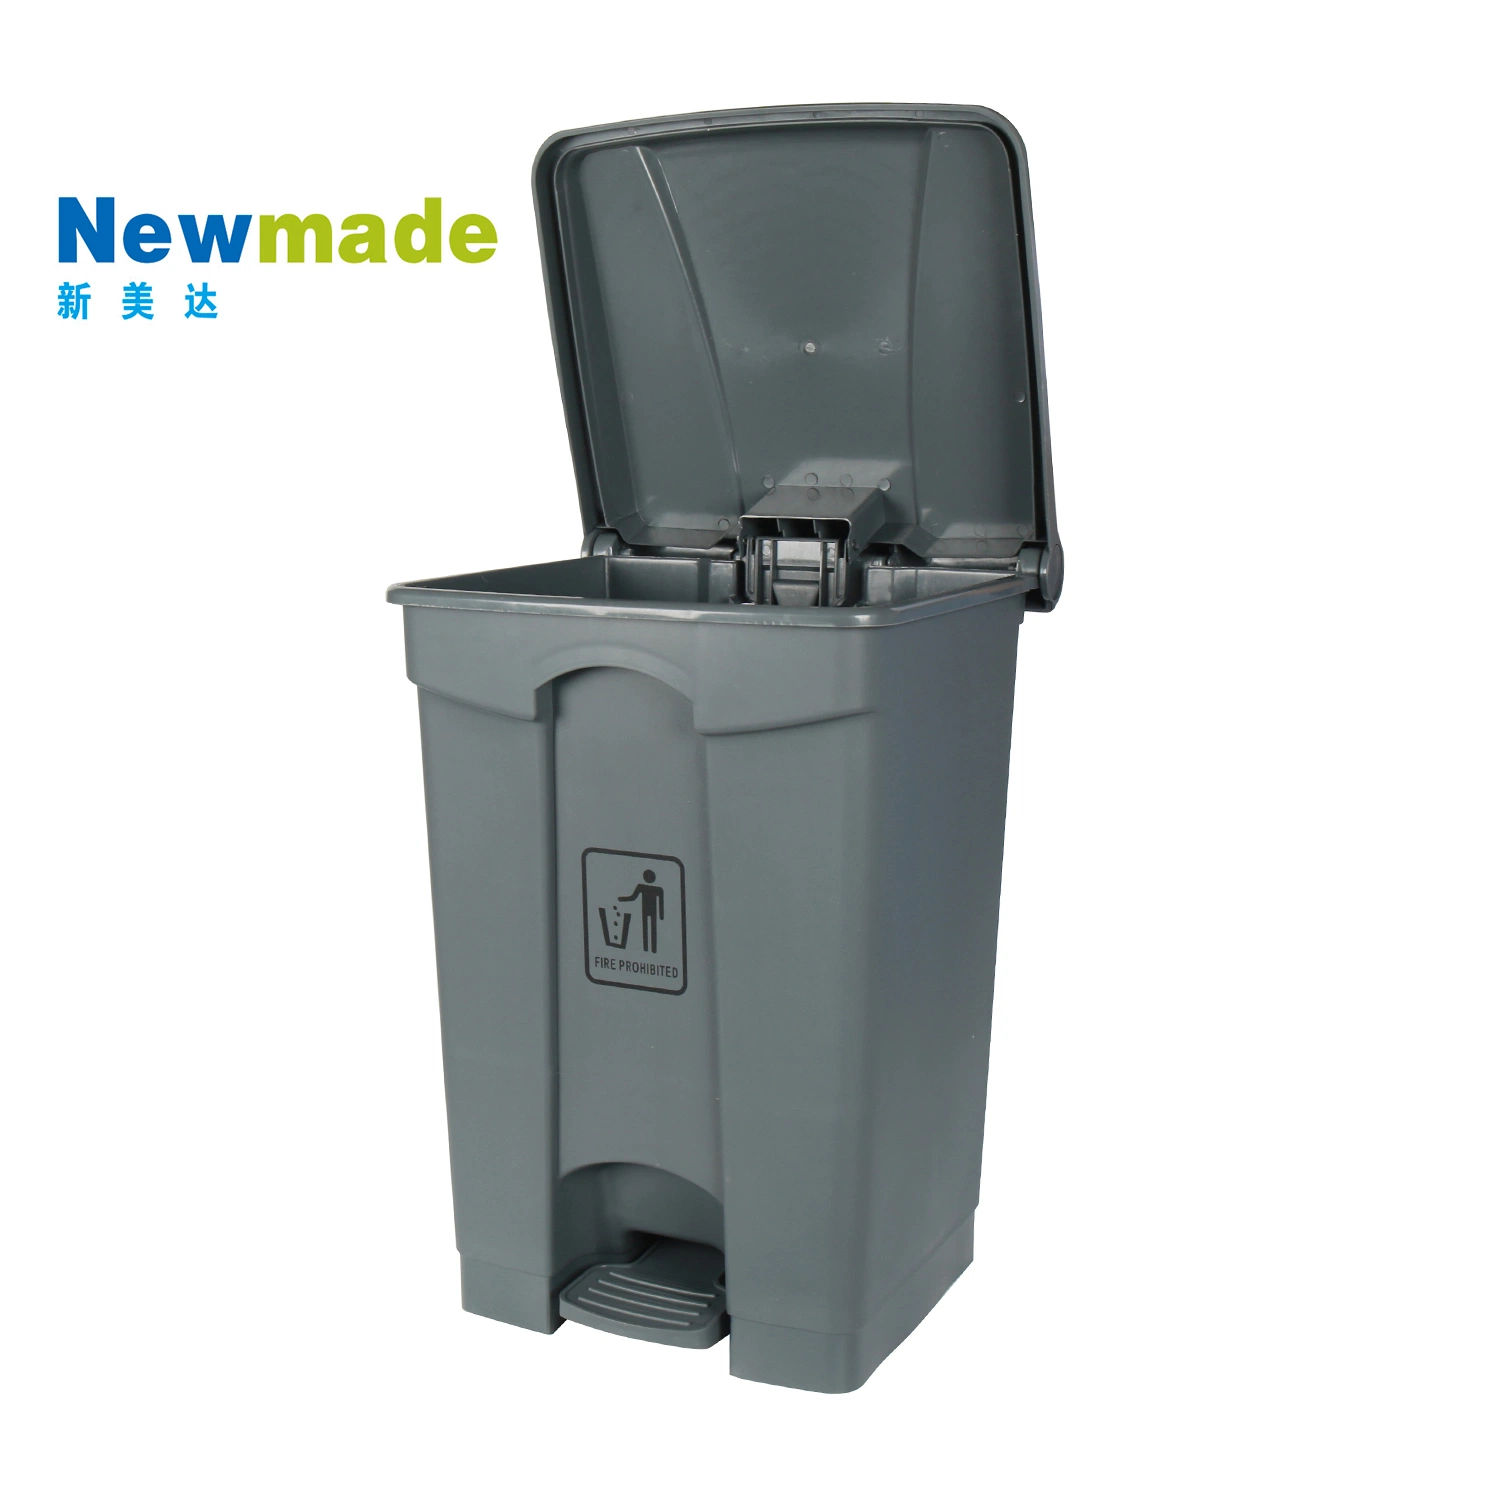 68loutdoor la papelera puede reciclar la papelera de plástico basura basura basura basura basura basura basura